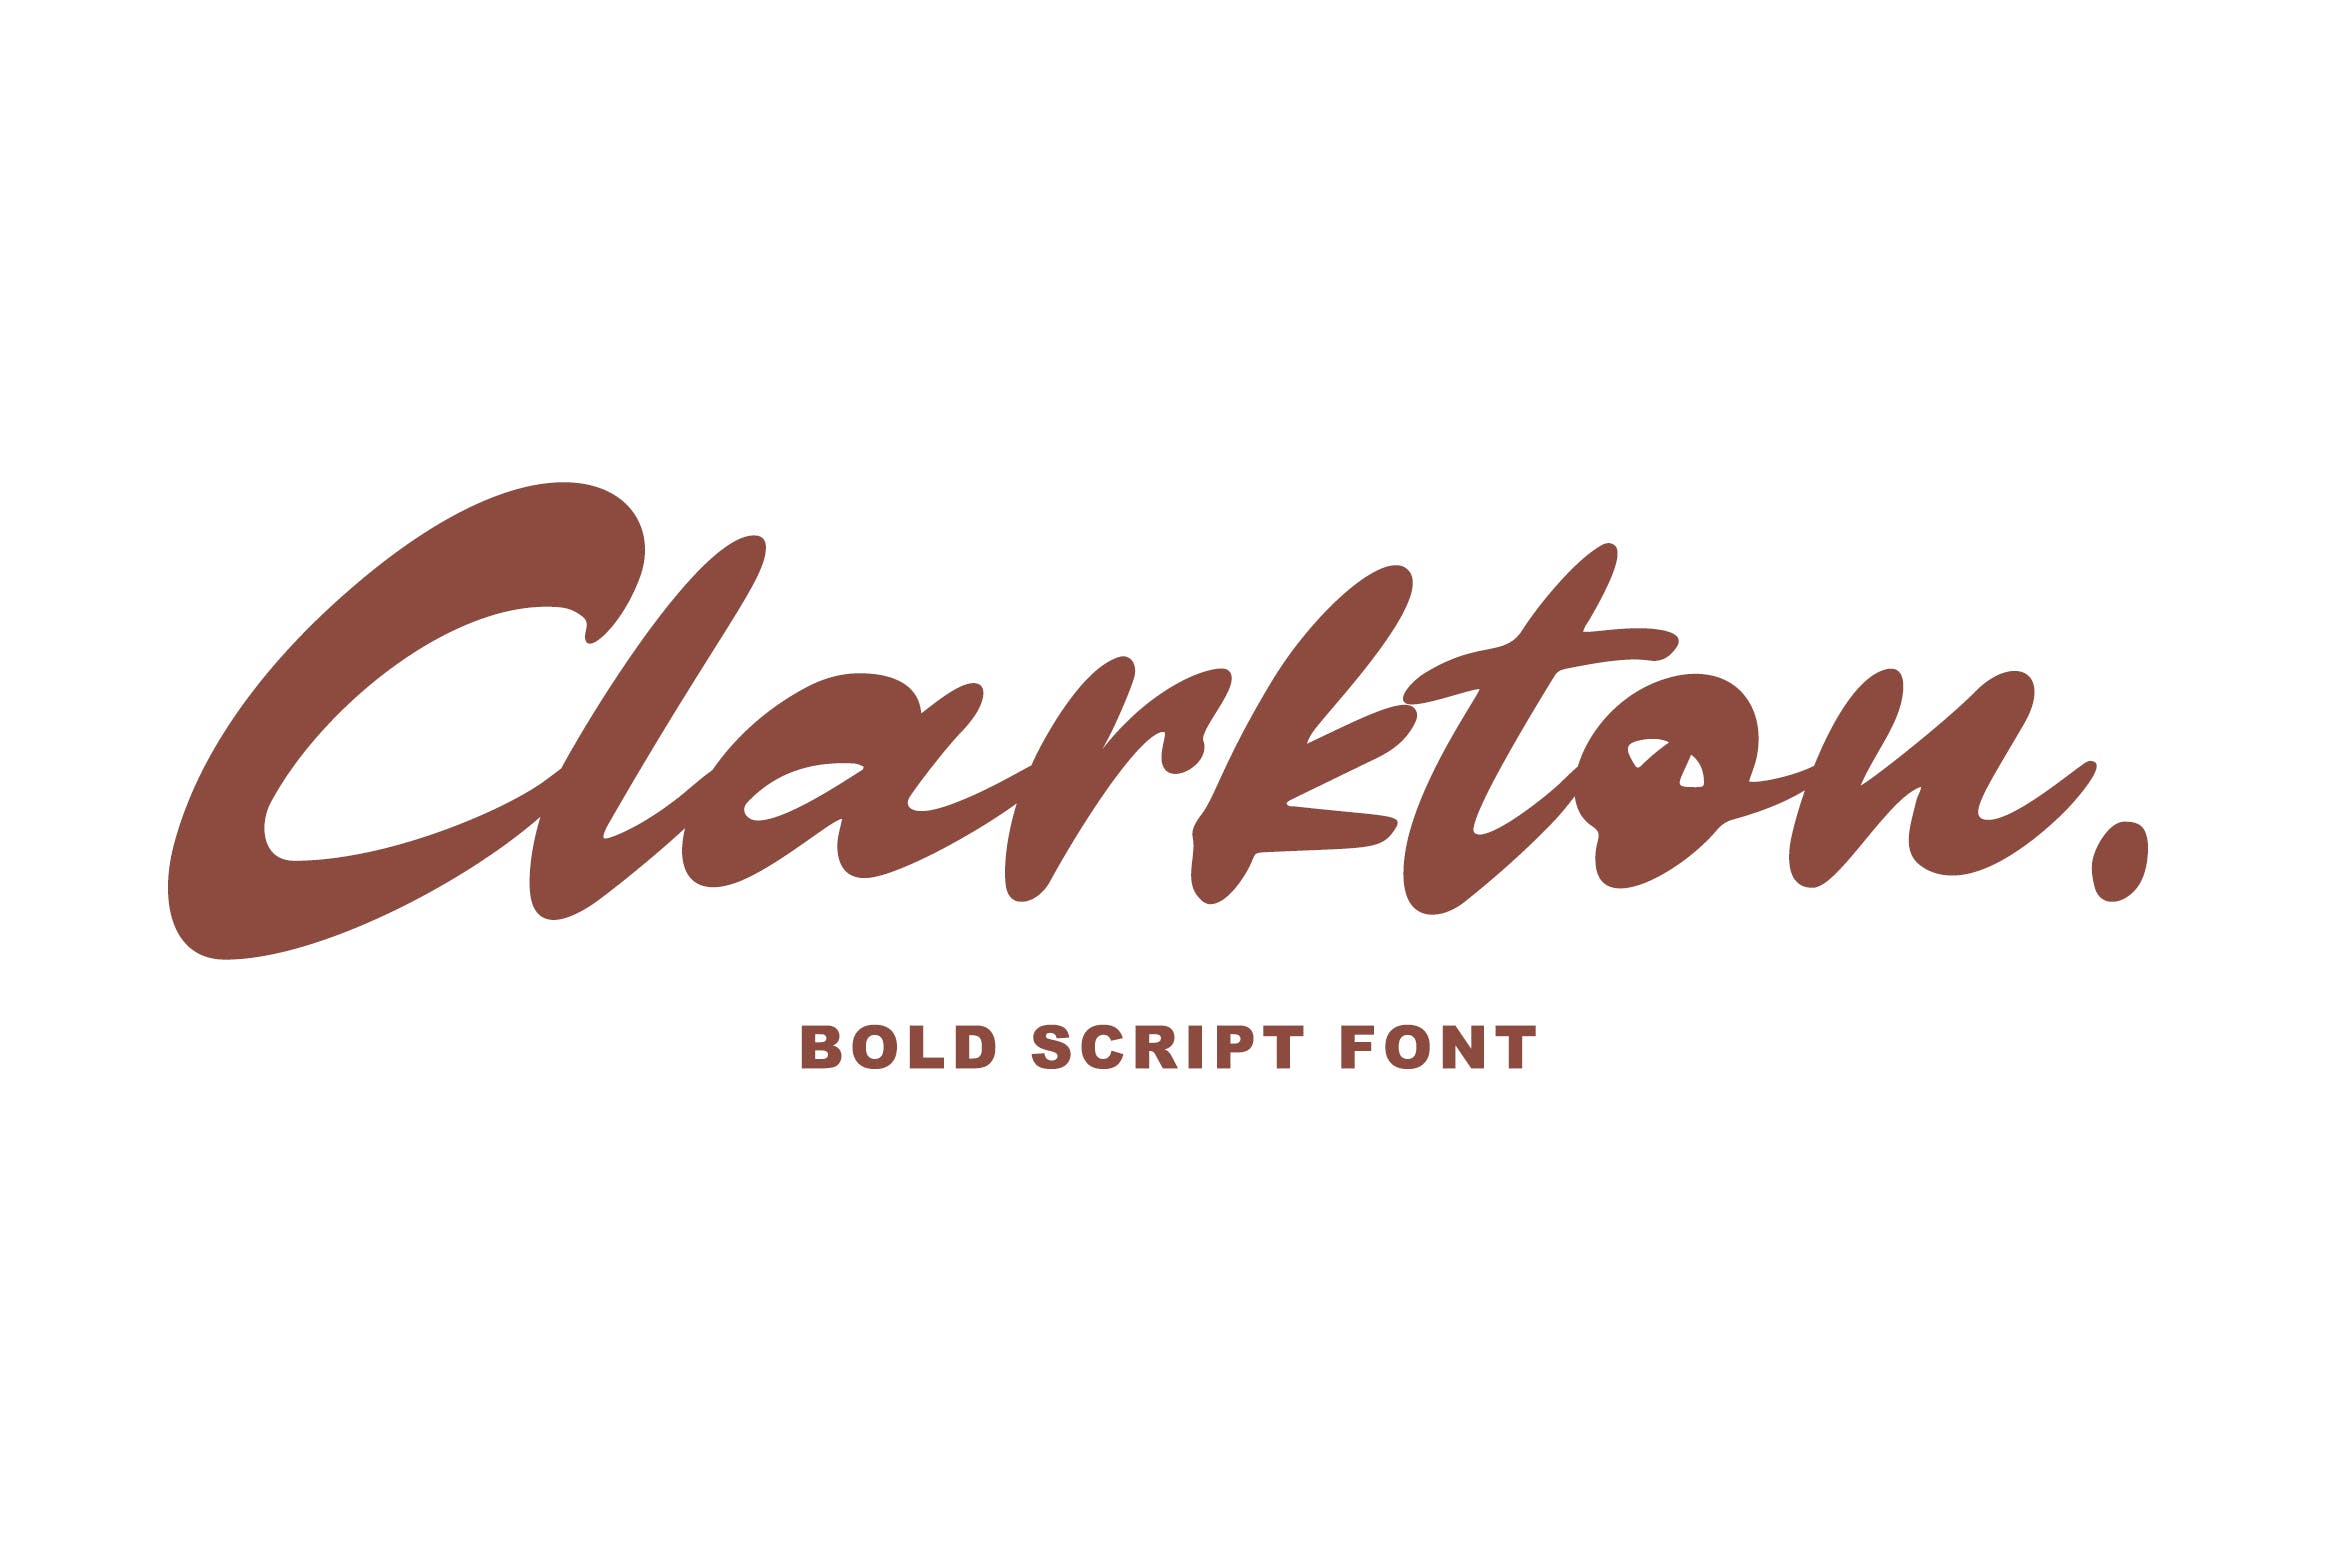 粗体画笔手写英文字体非凡图库精选 Clarkton – Bold Script Font插图